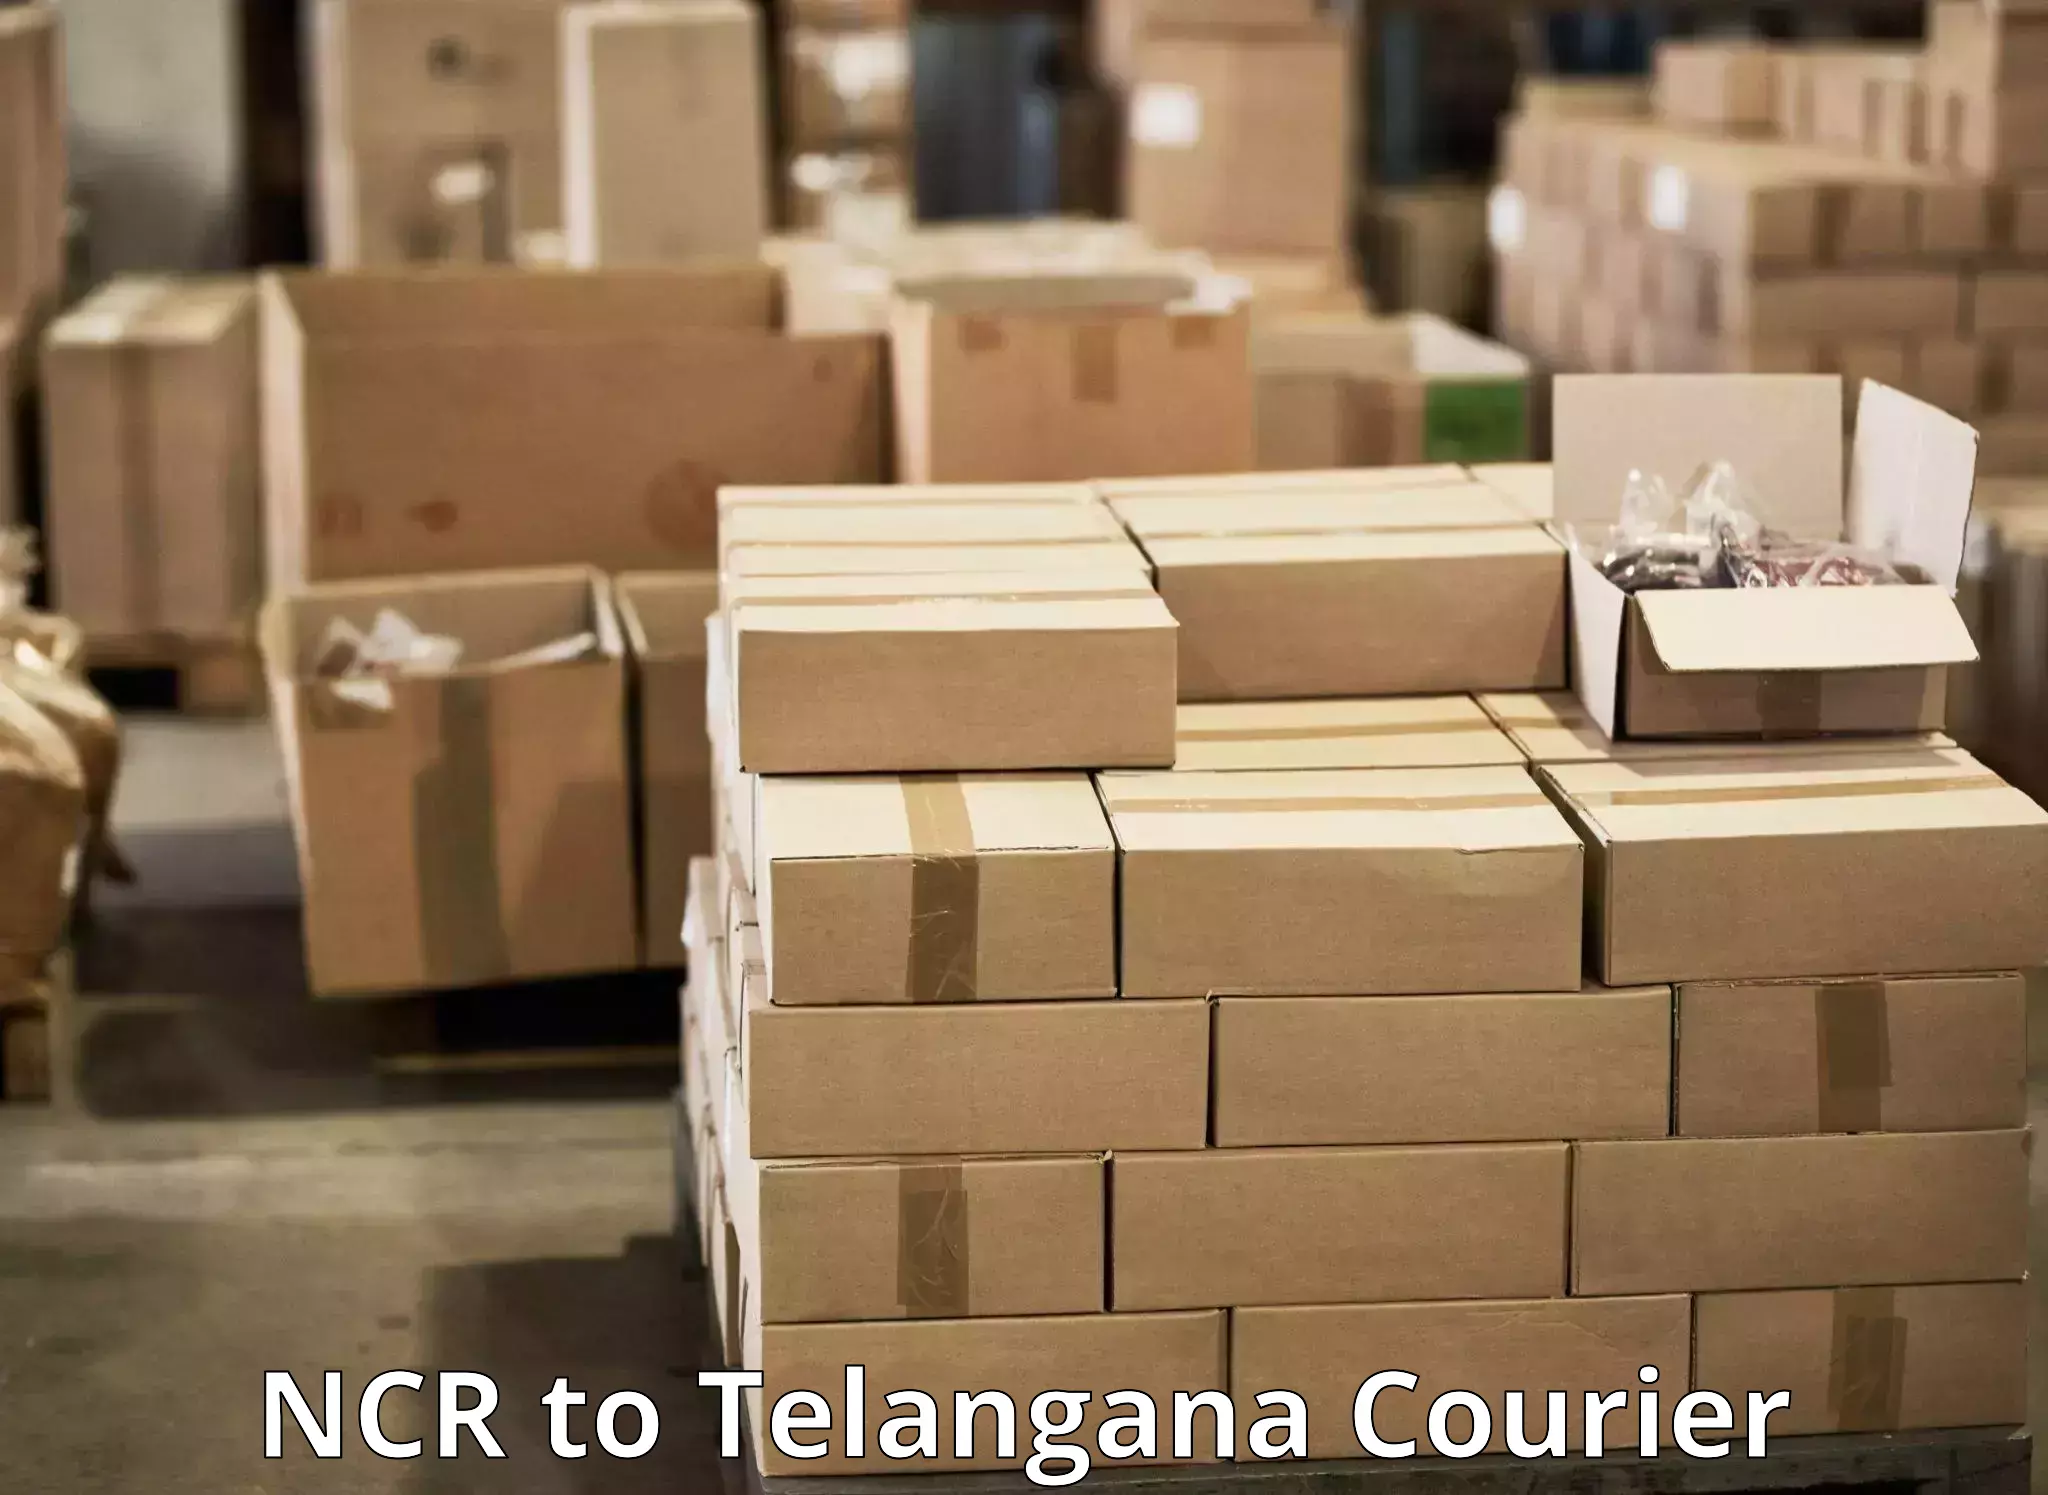 Express logistics NCR to Telangana